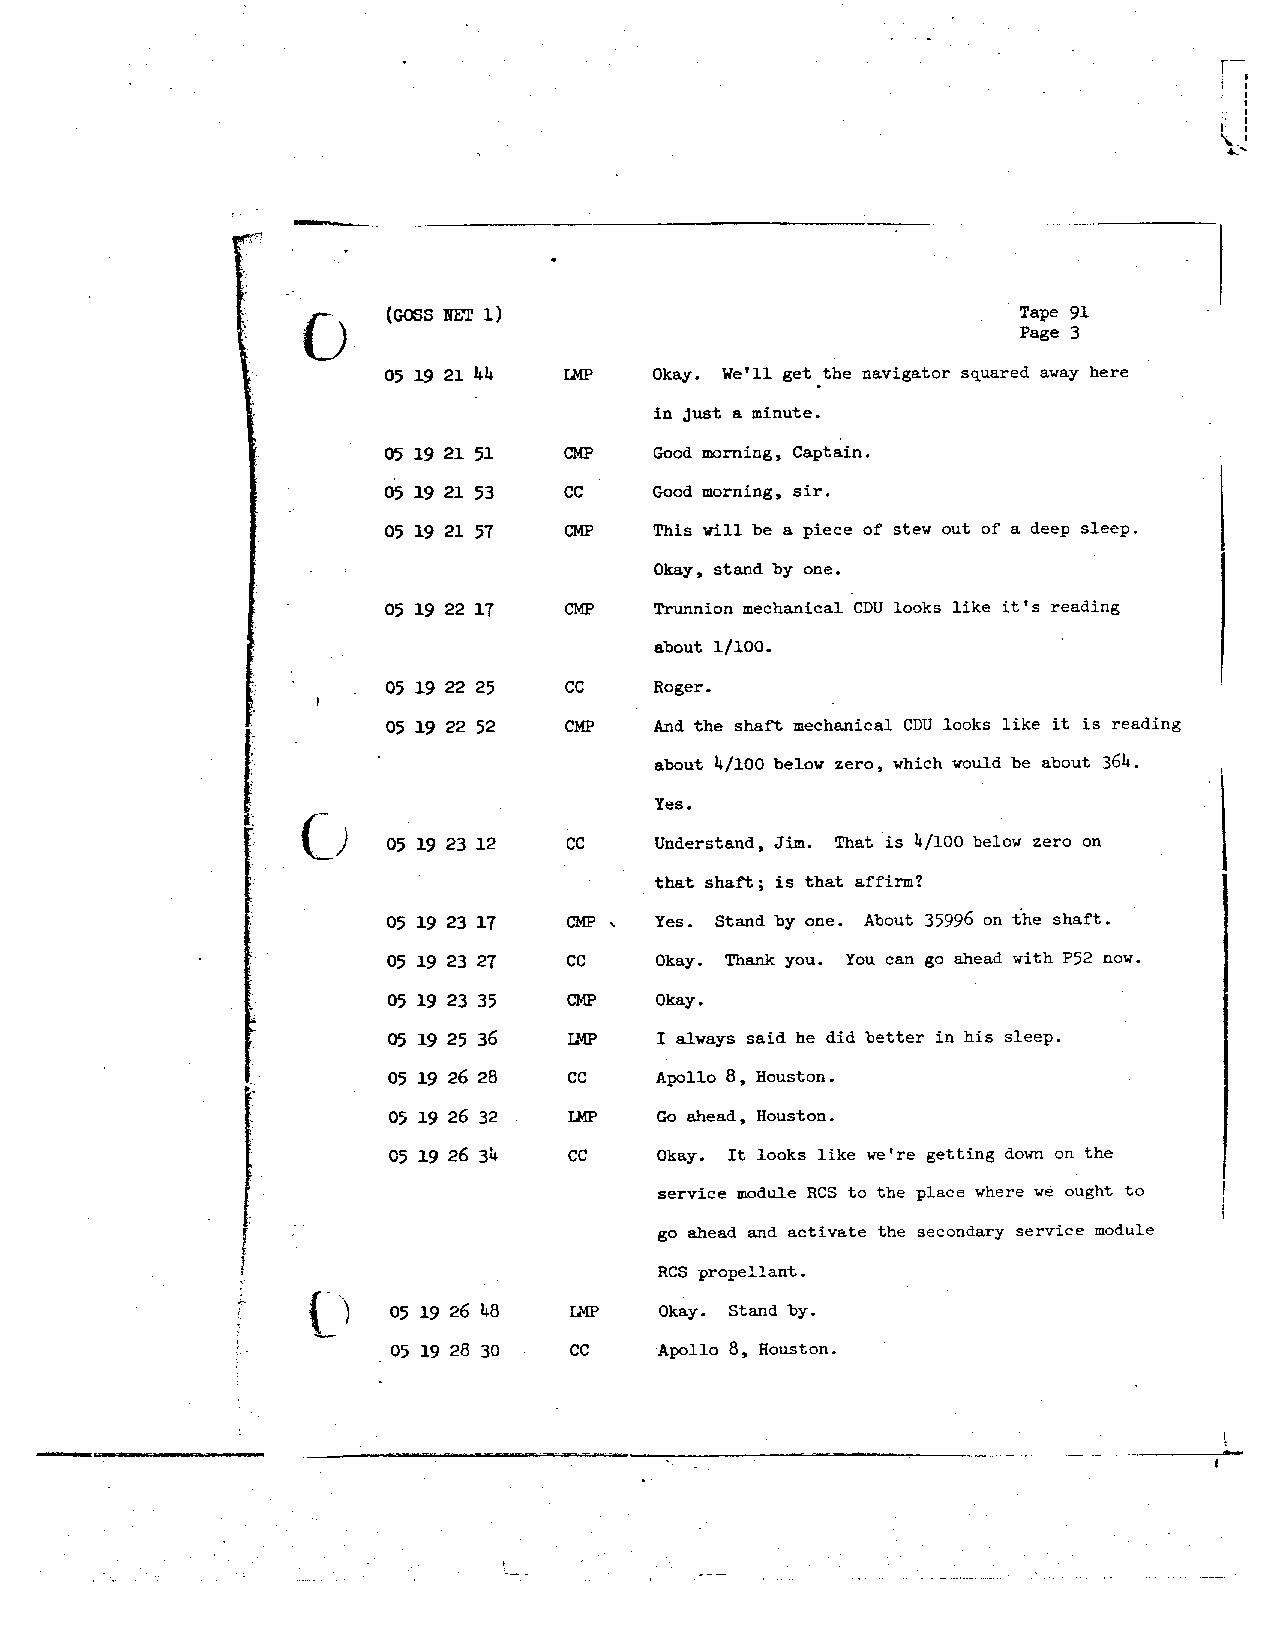 Page 728 of Apollo 8’s original transcript